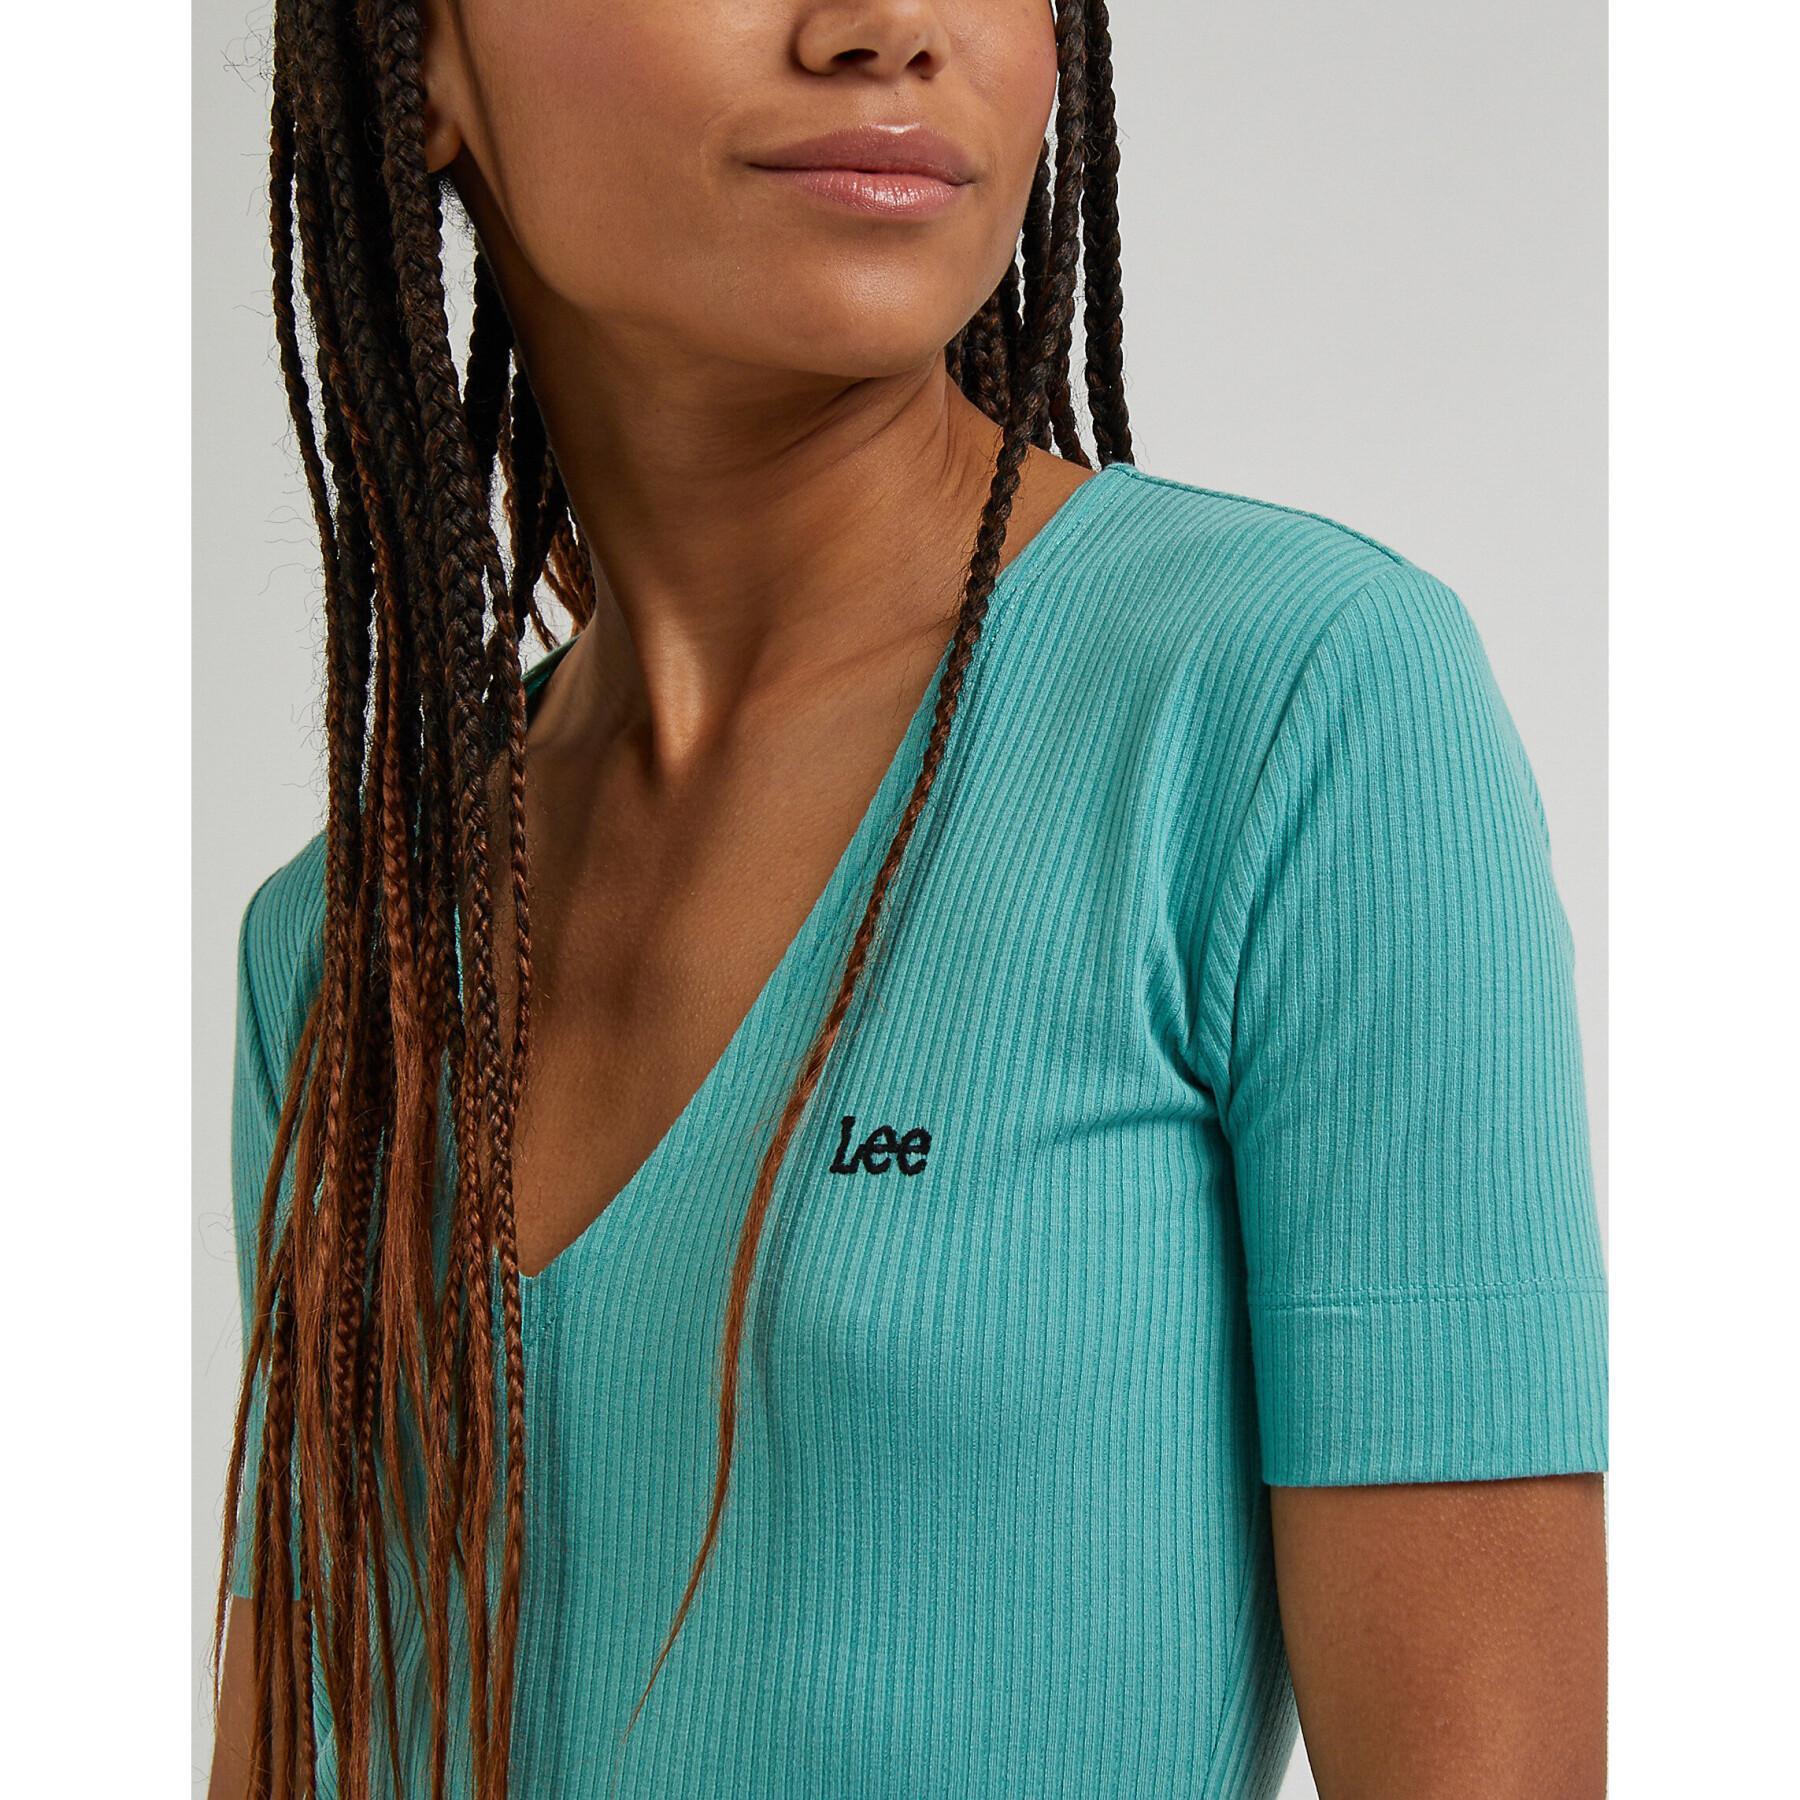 Women's v-neck T-shirt Lee